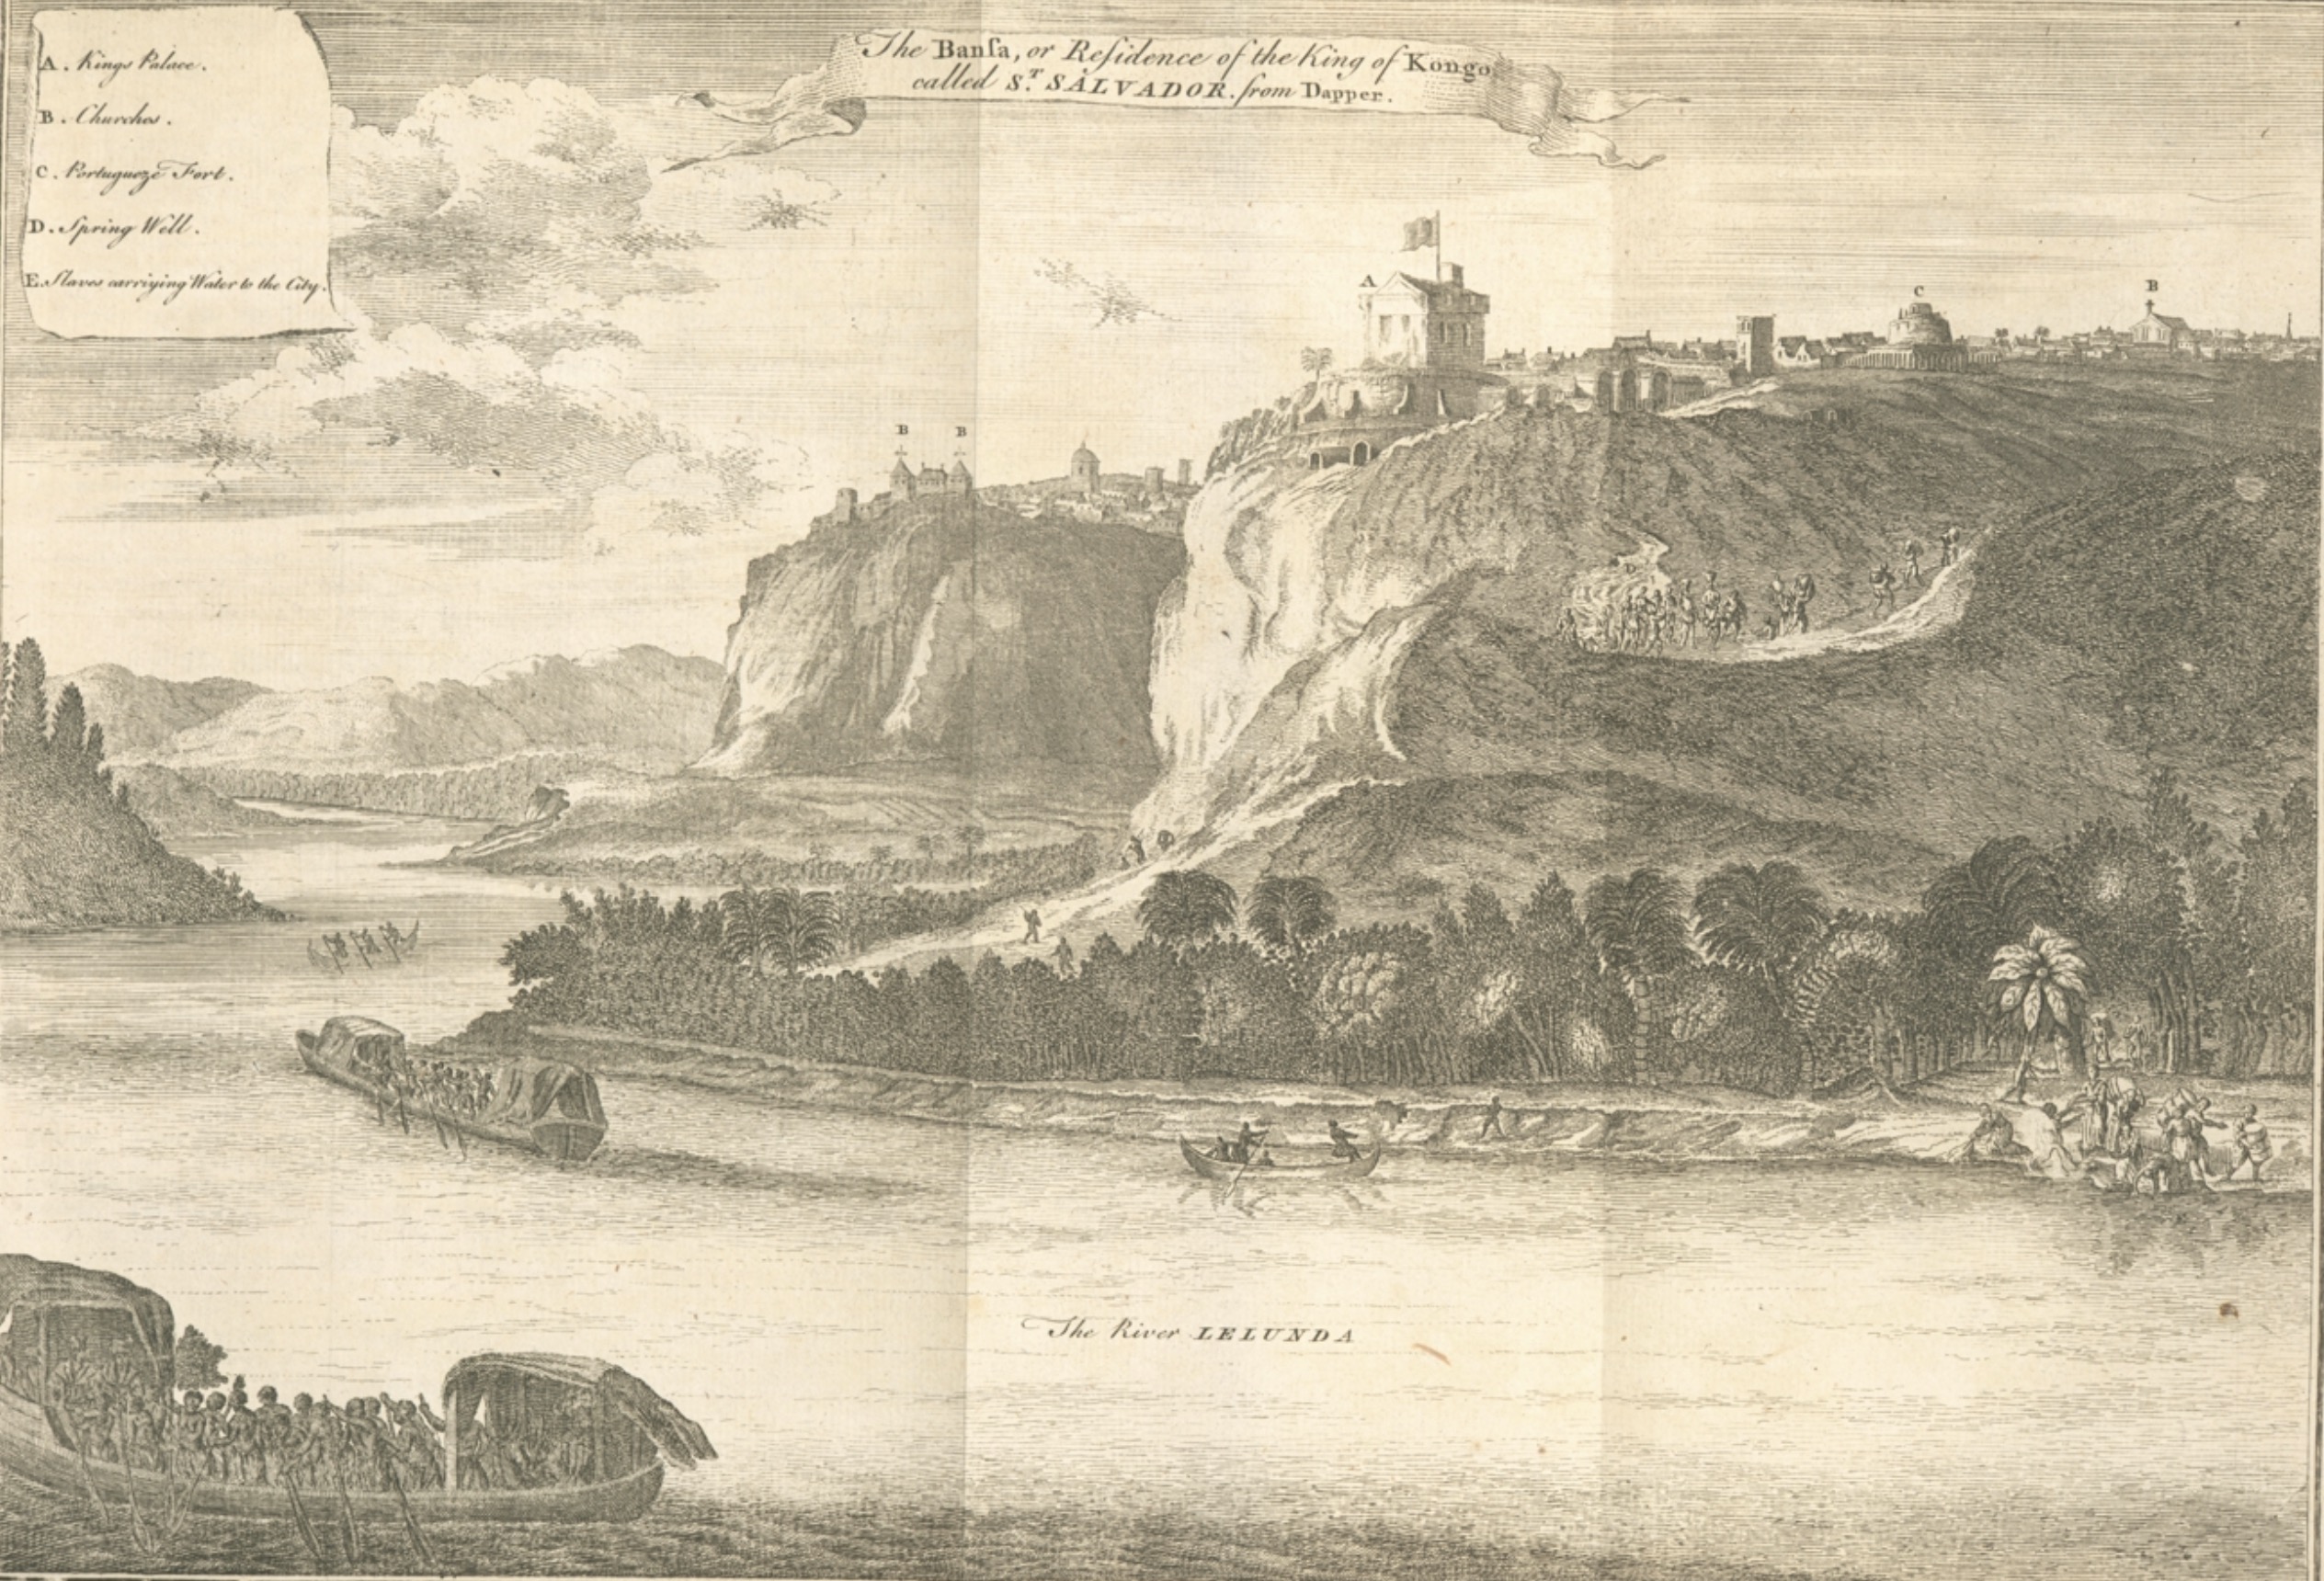 São Salvador do Congo. Thomas Astley  (1745)